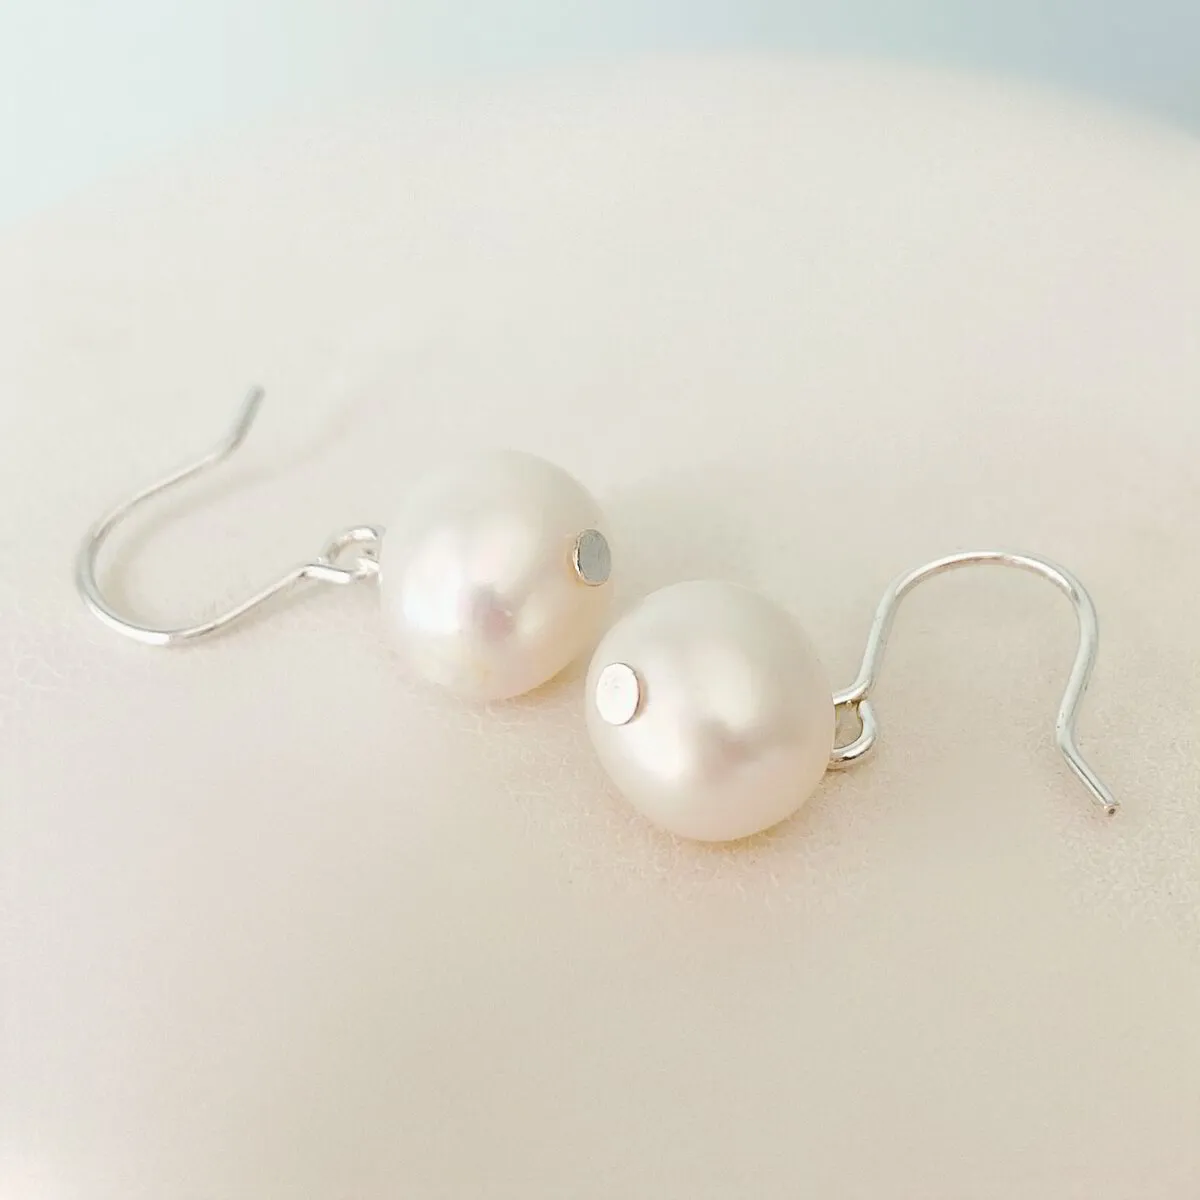 White fresh water pearls 